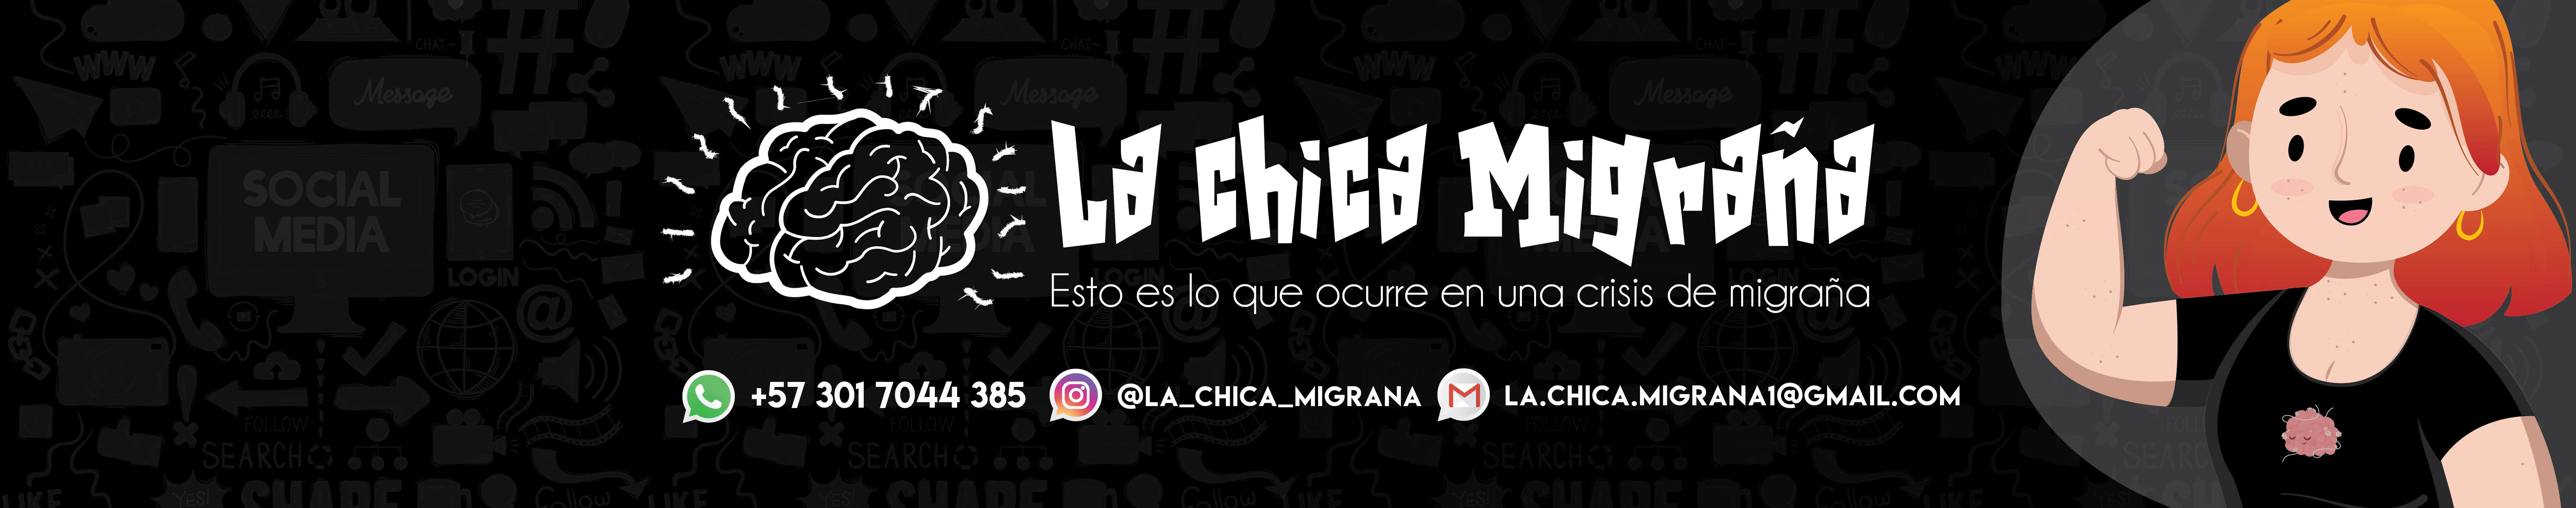 La Chica Migraña's profile banner